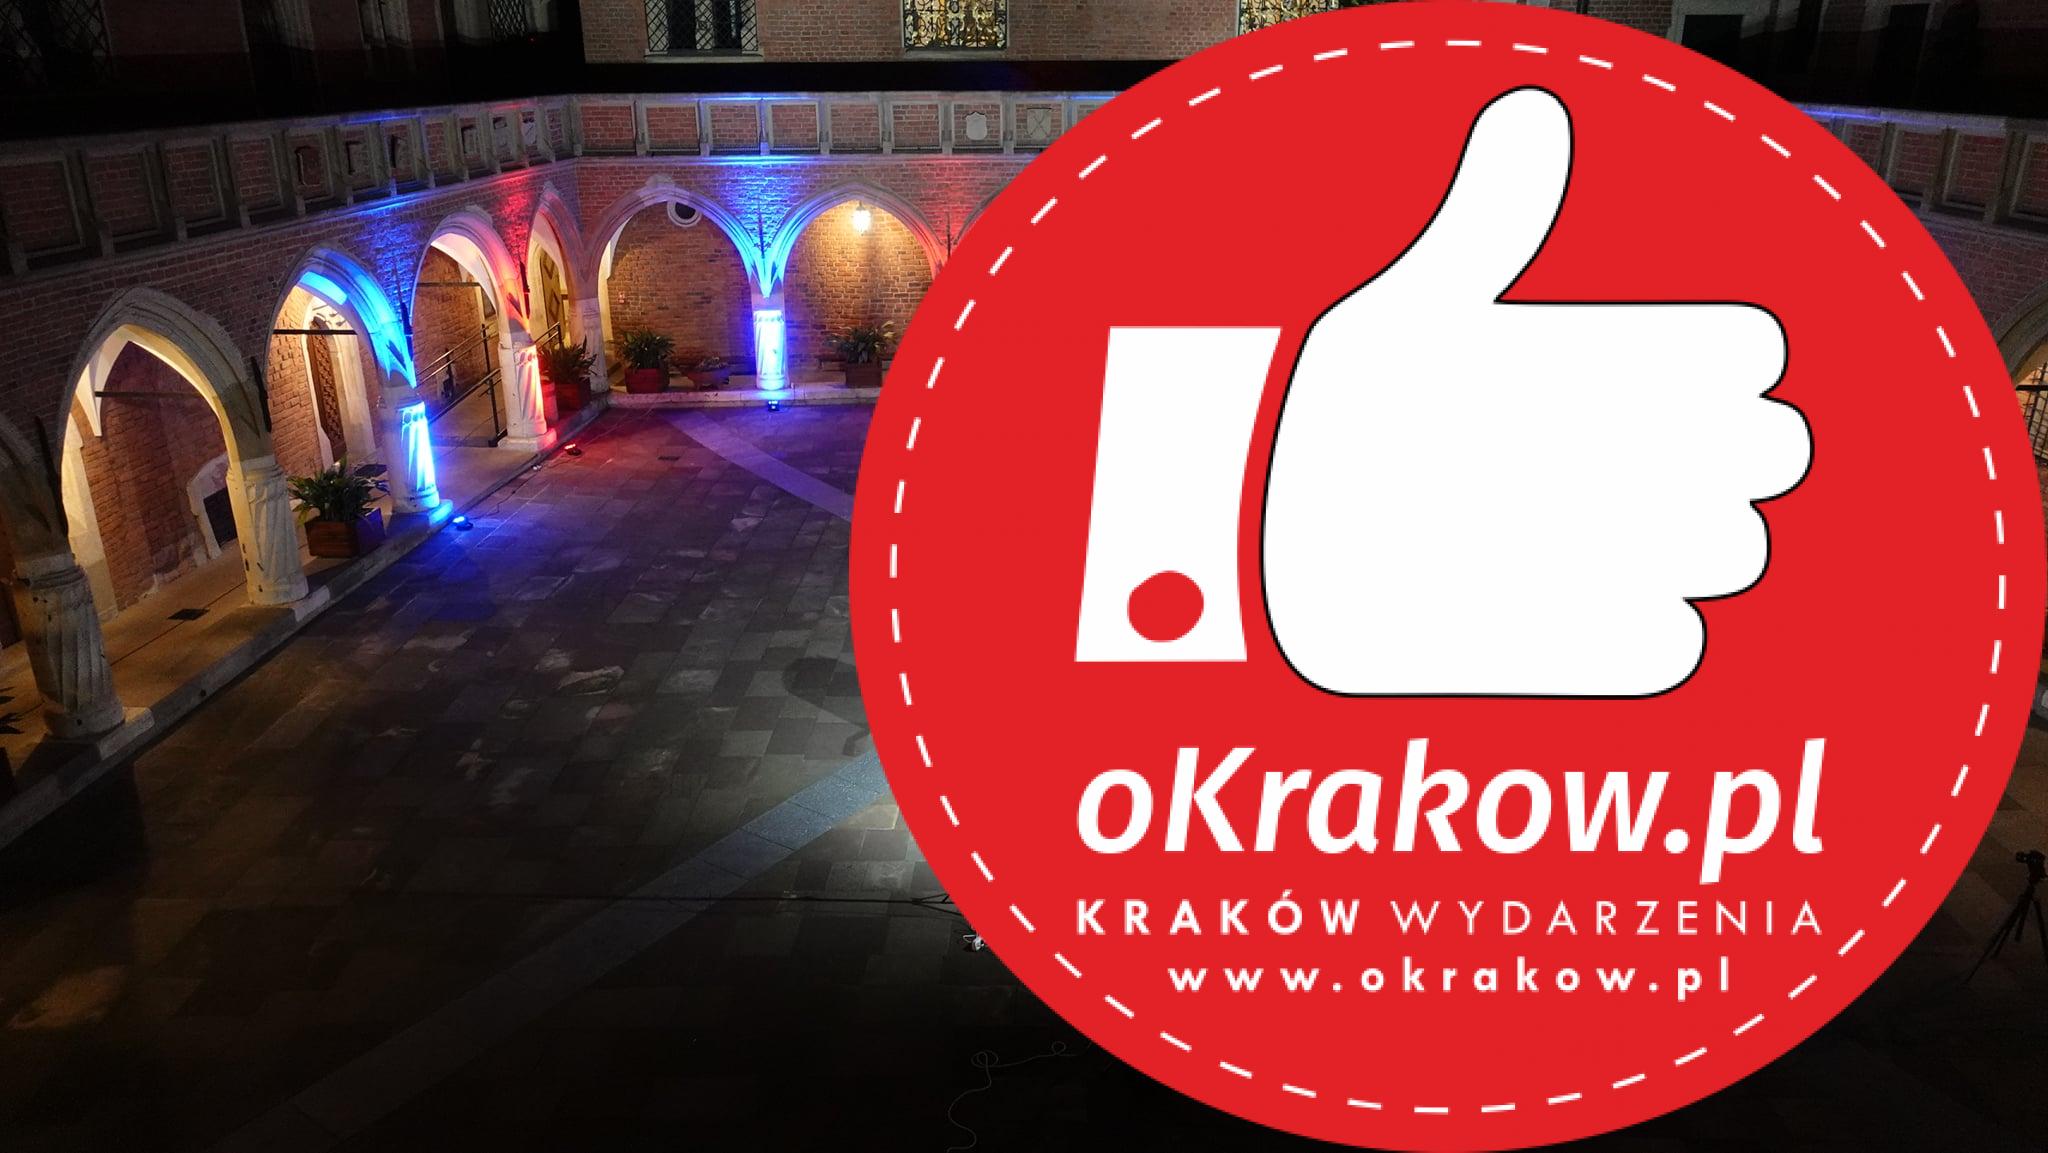 Krakowska Noc Gitarowa / Guitar Night in Krakow